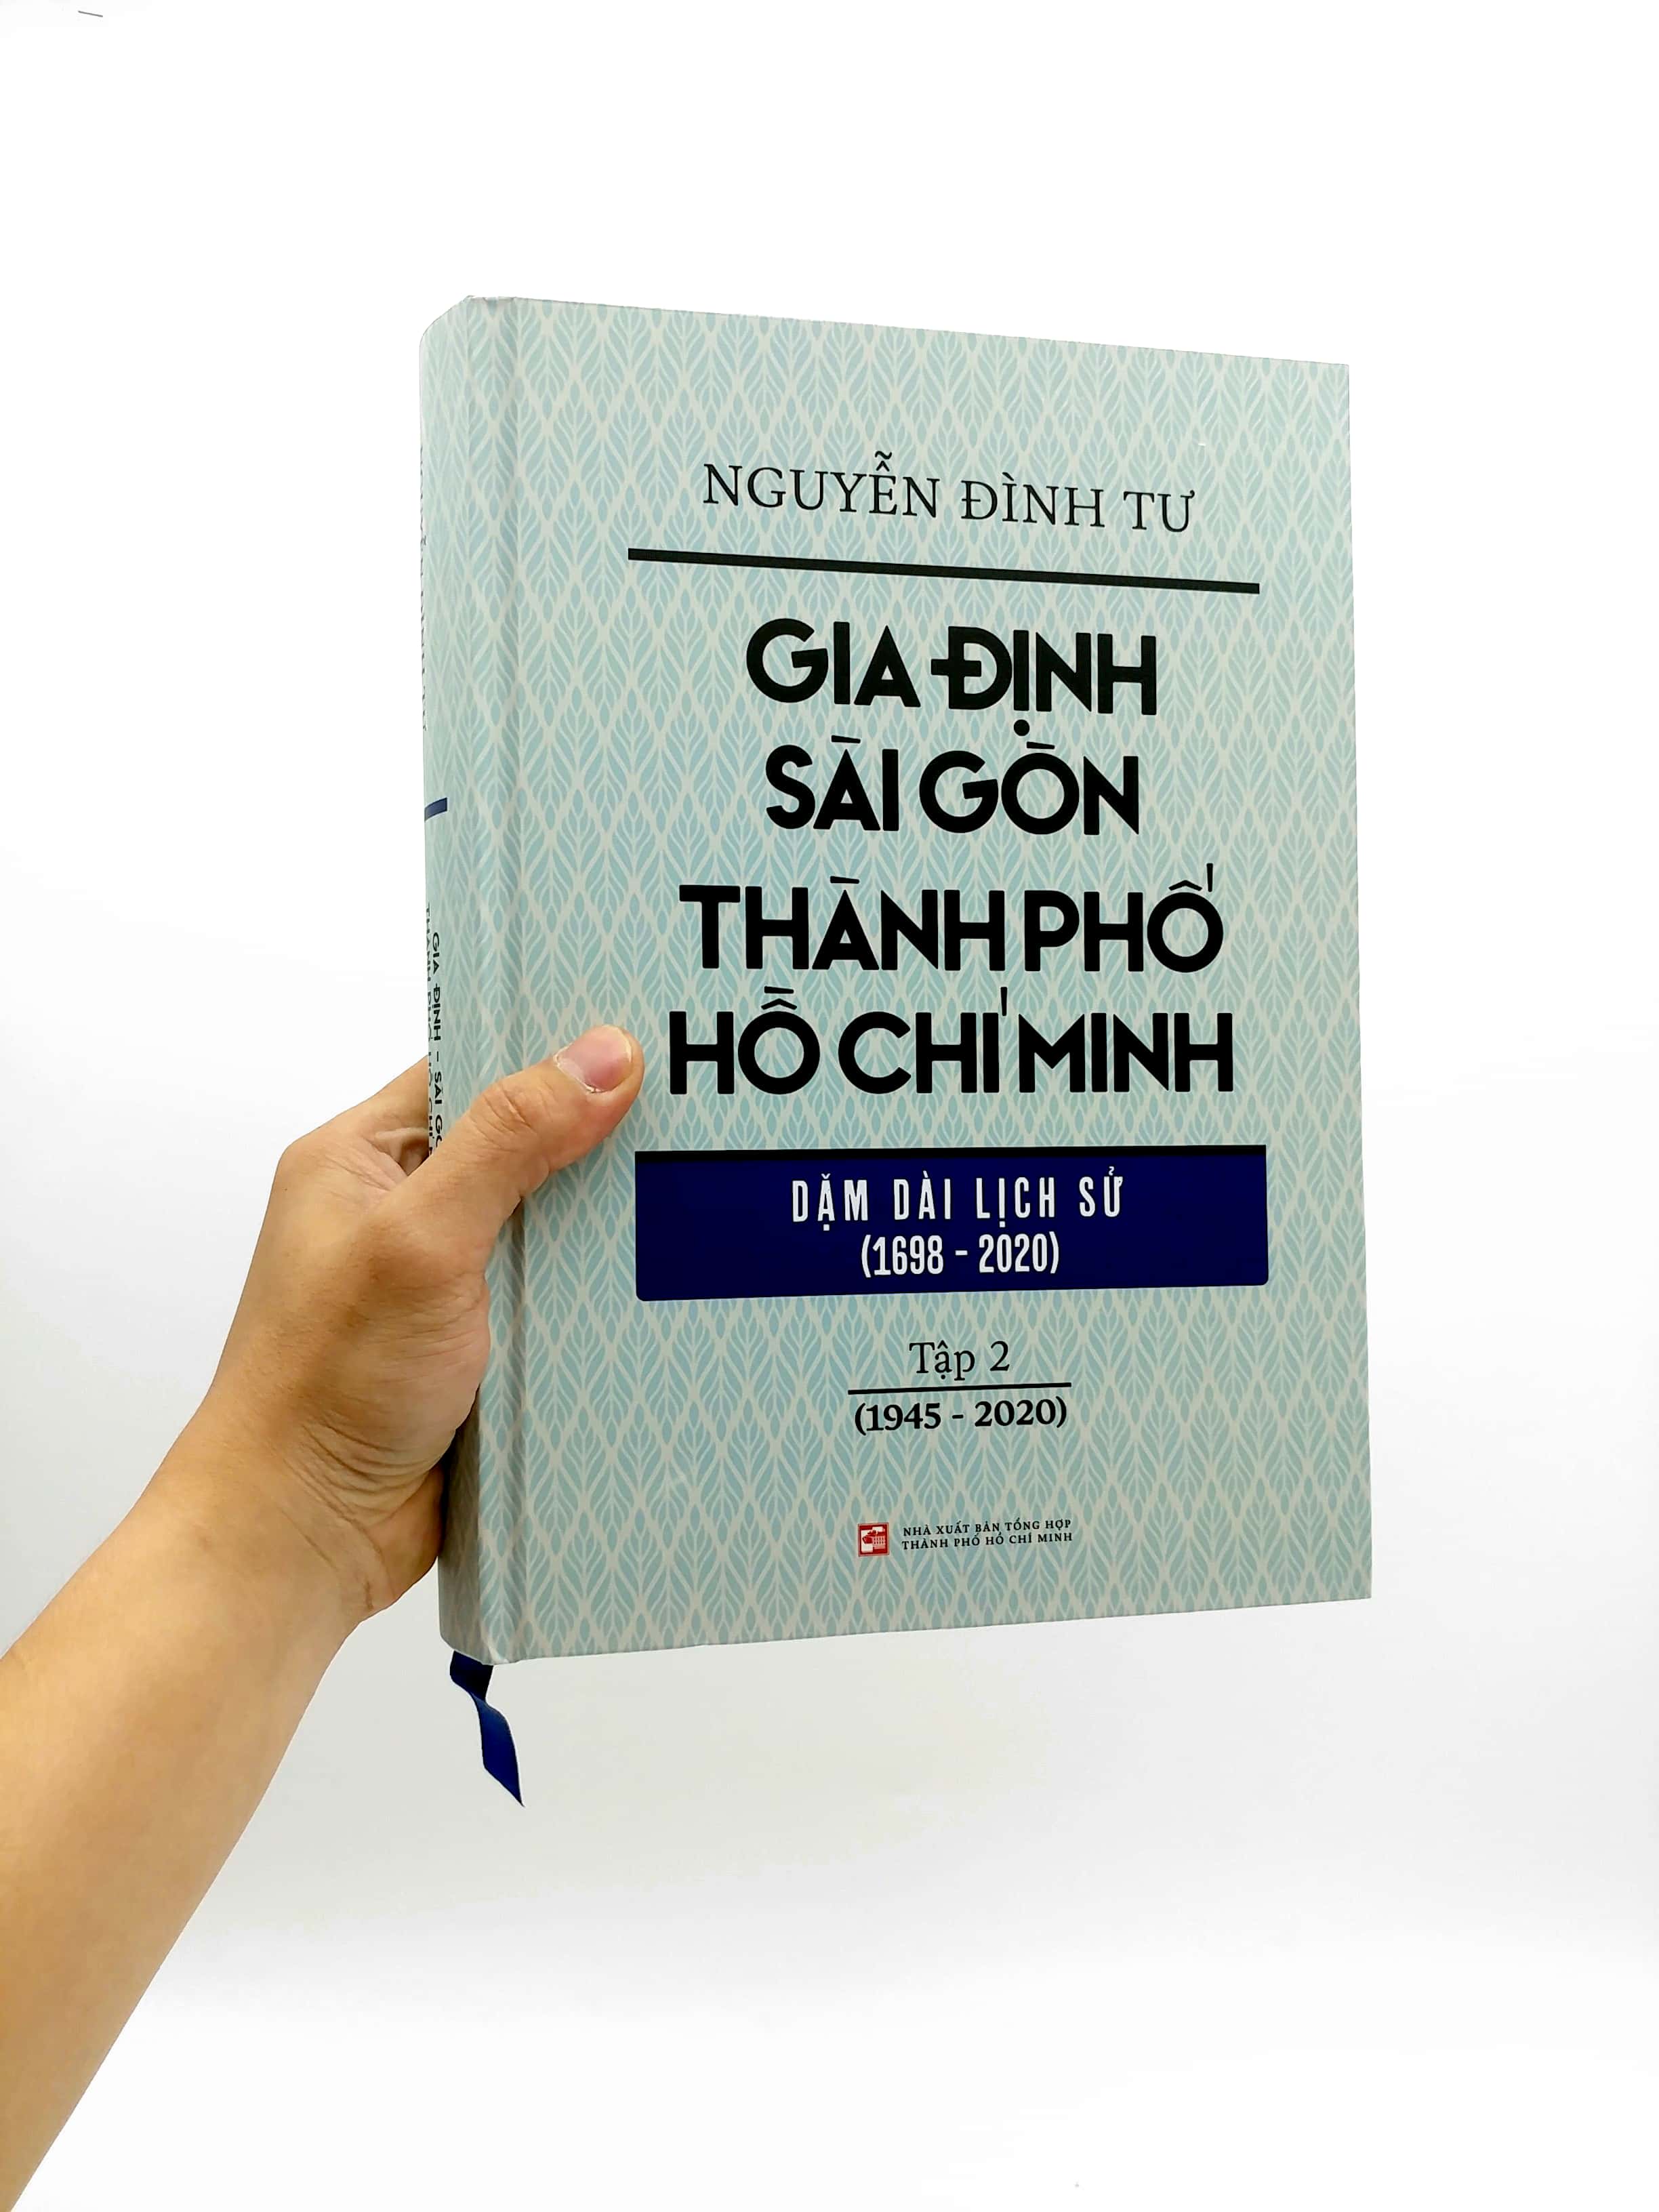 Gia Định - Sài Gòn - Thành Phố Hồ Chí Minh: Dặm Dài Lịch Sử 1698 - 2020 -Tập 2 - 1945 - 2020 PDF